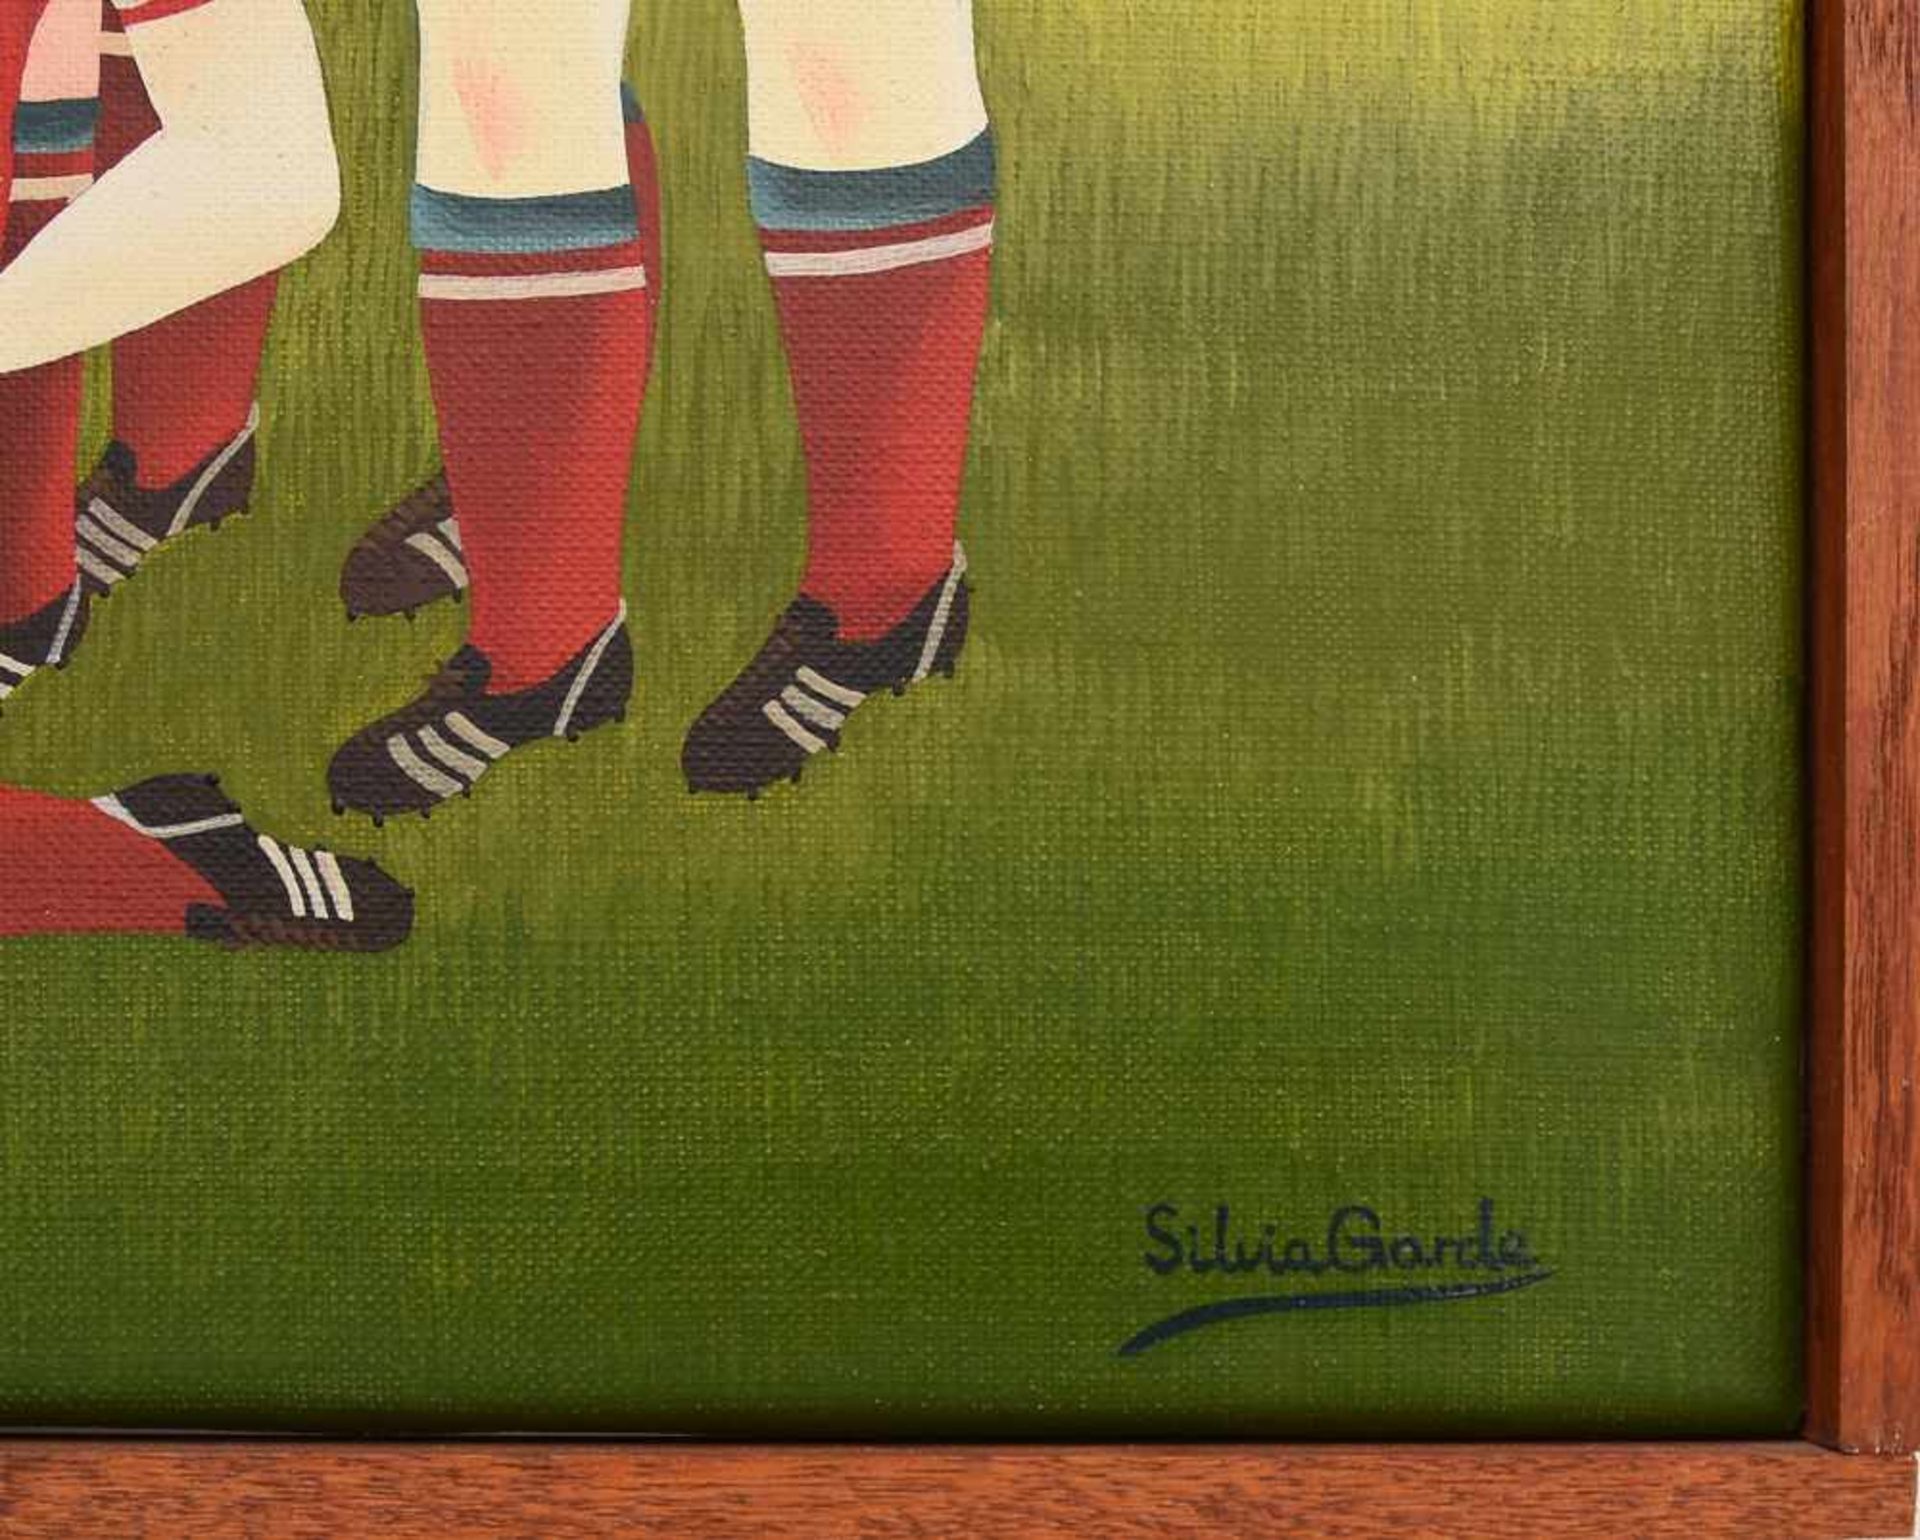 SILVIA GARDE, "Fußballmanschaft", Öl auf Leinwand, gerahmt. Unten rechts signiert. 62 x 52 cm. - Bild 2 aus 3